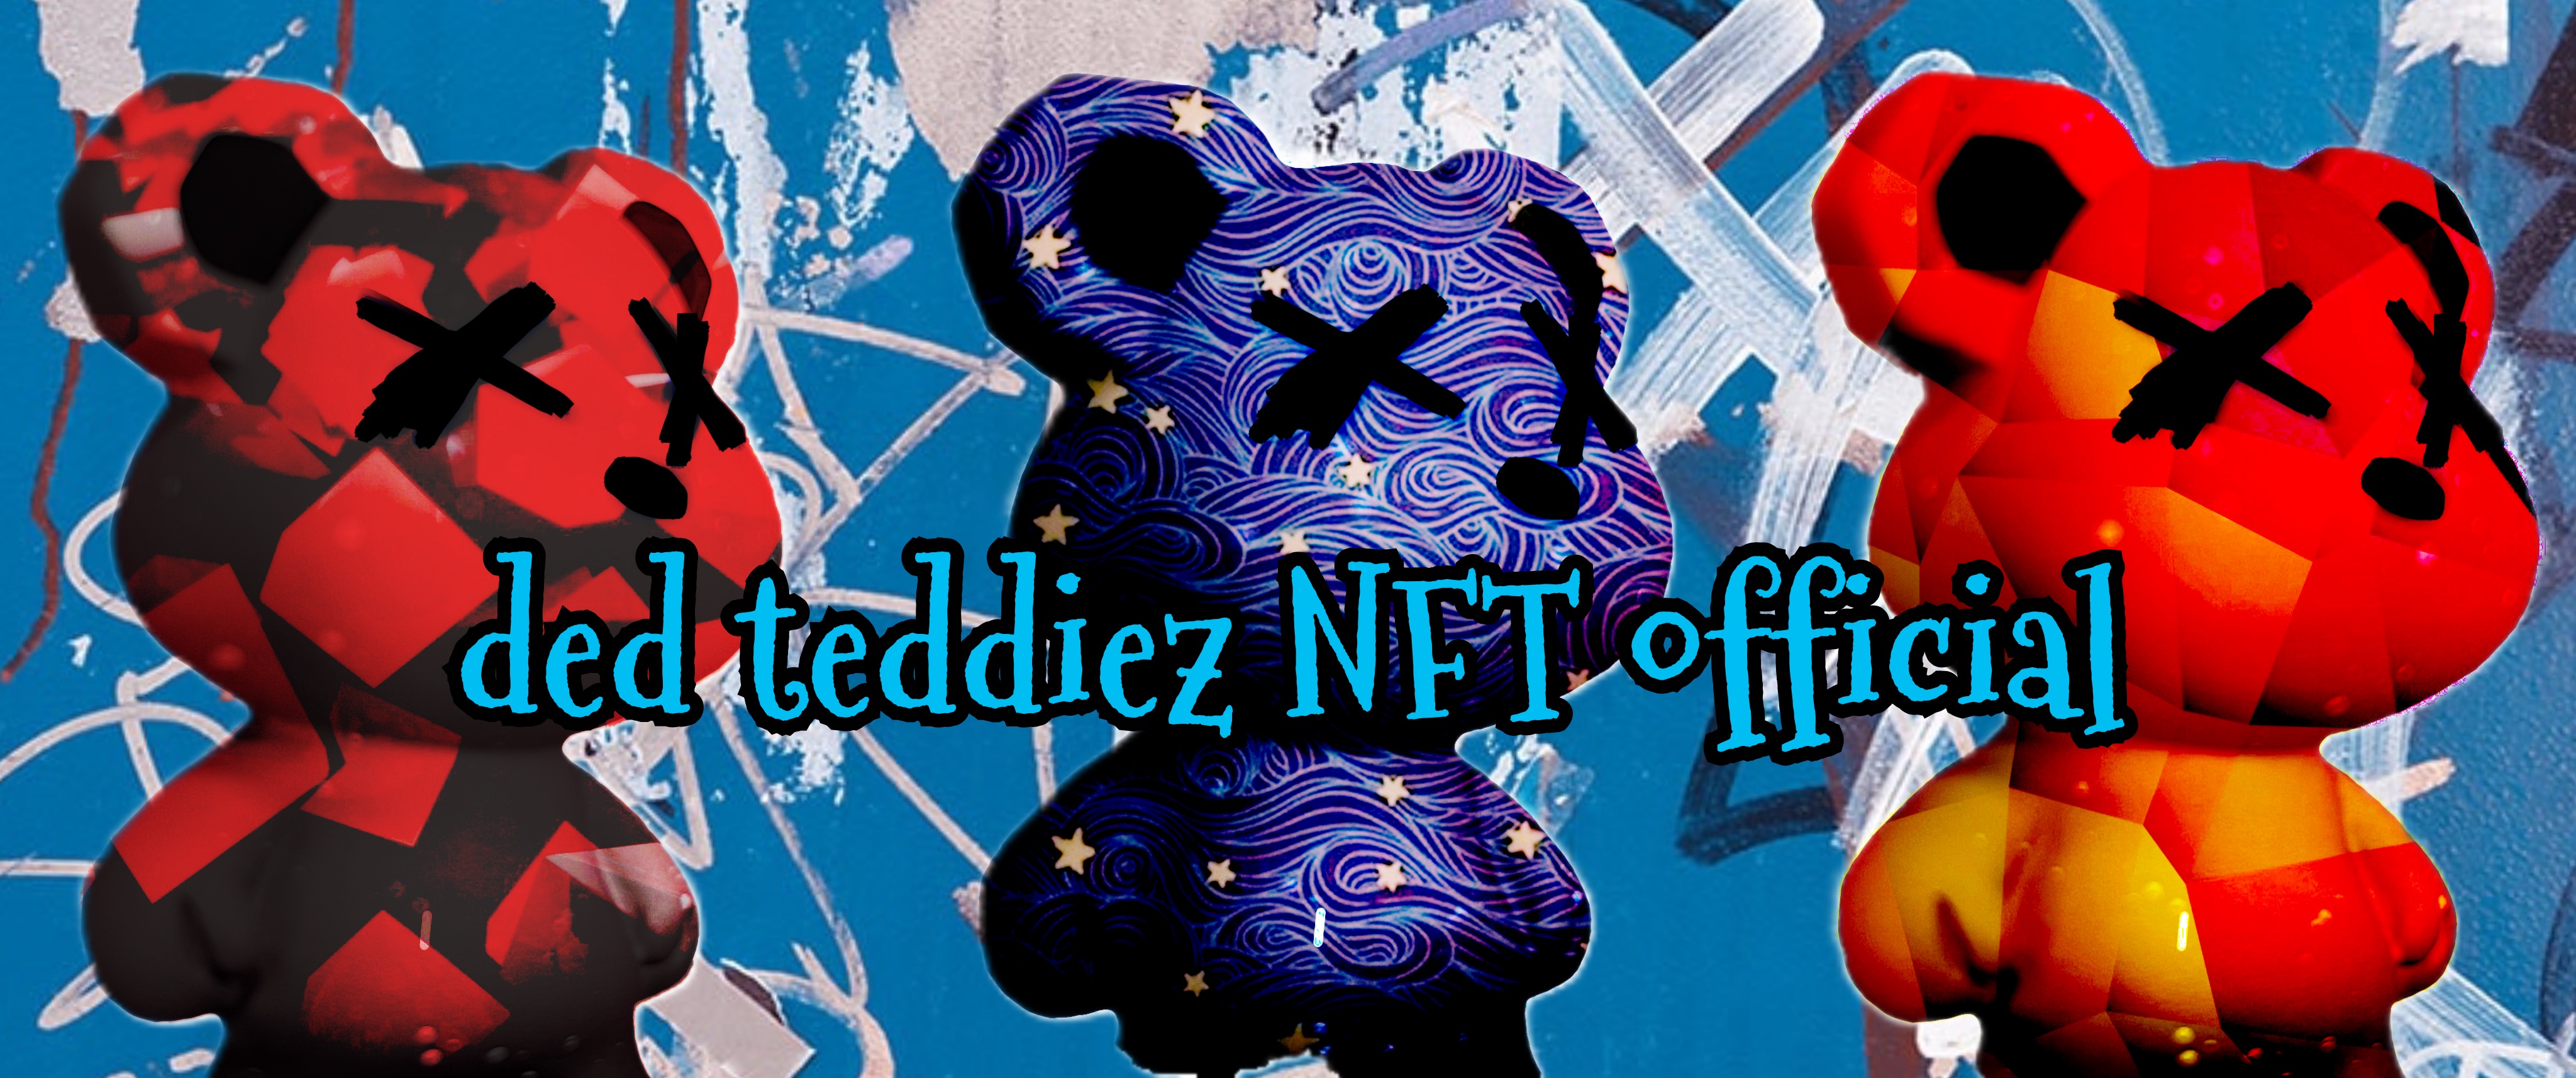 Ded_Teddiez_NFT_Official bannière